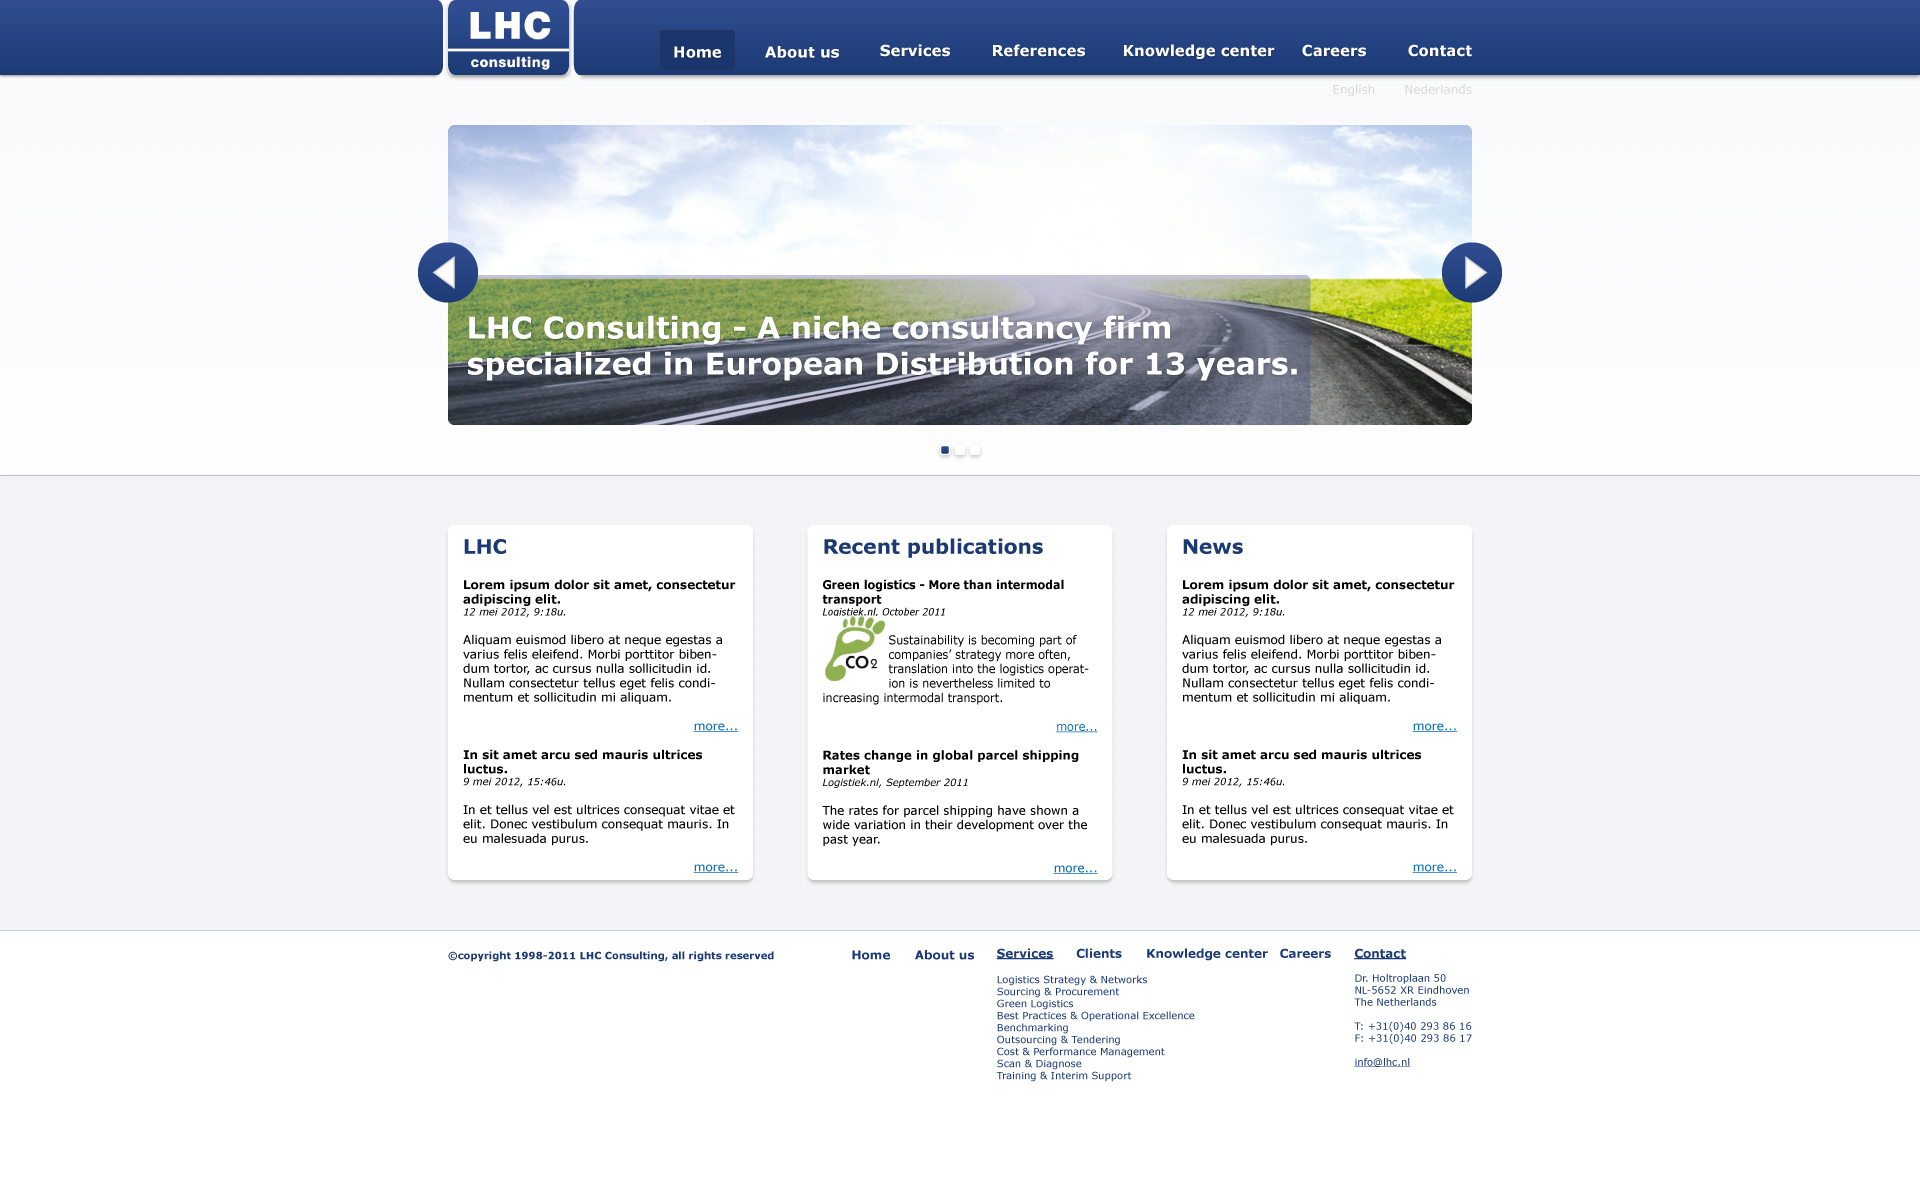 Home van LHC website